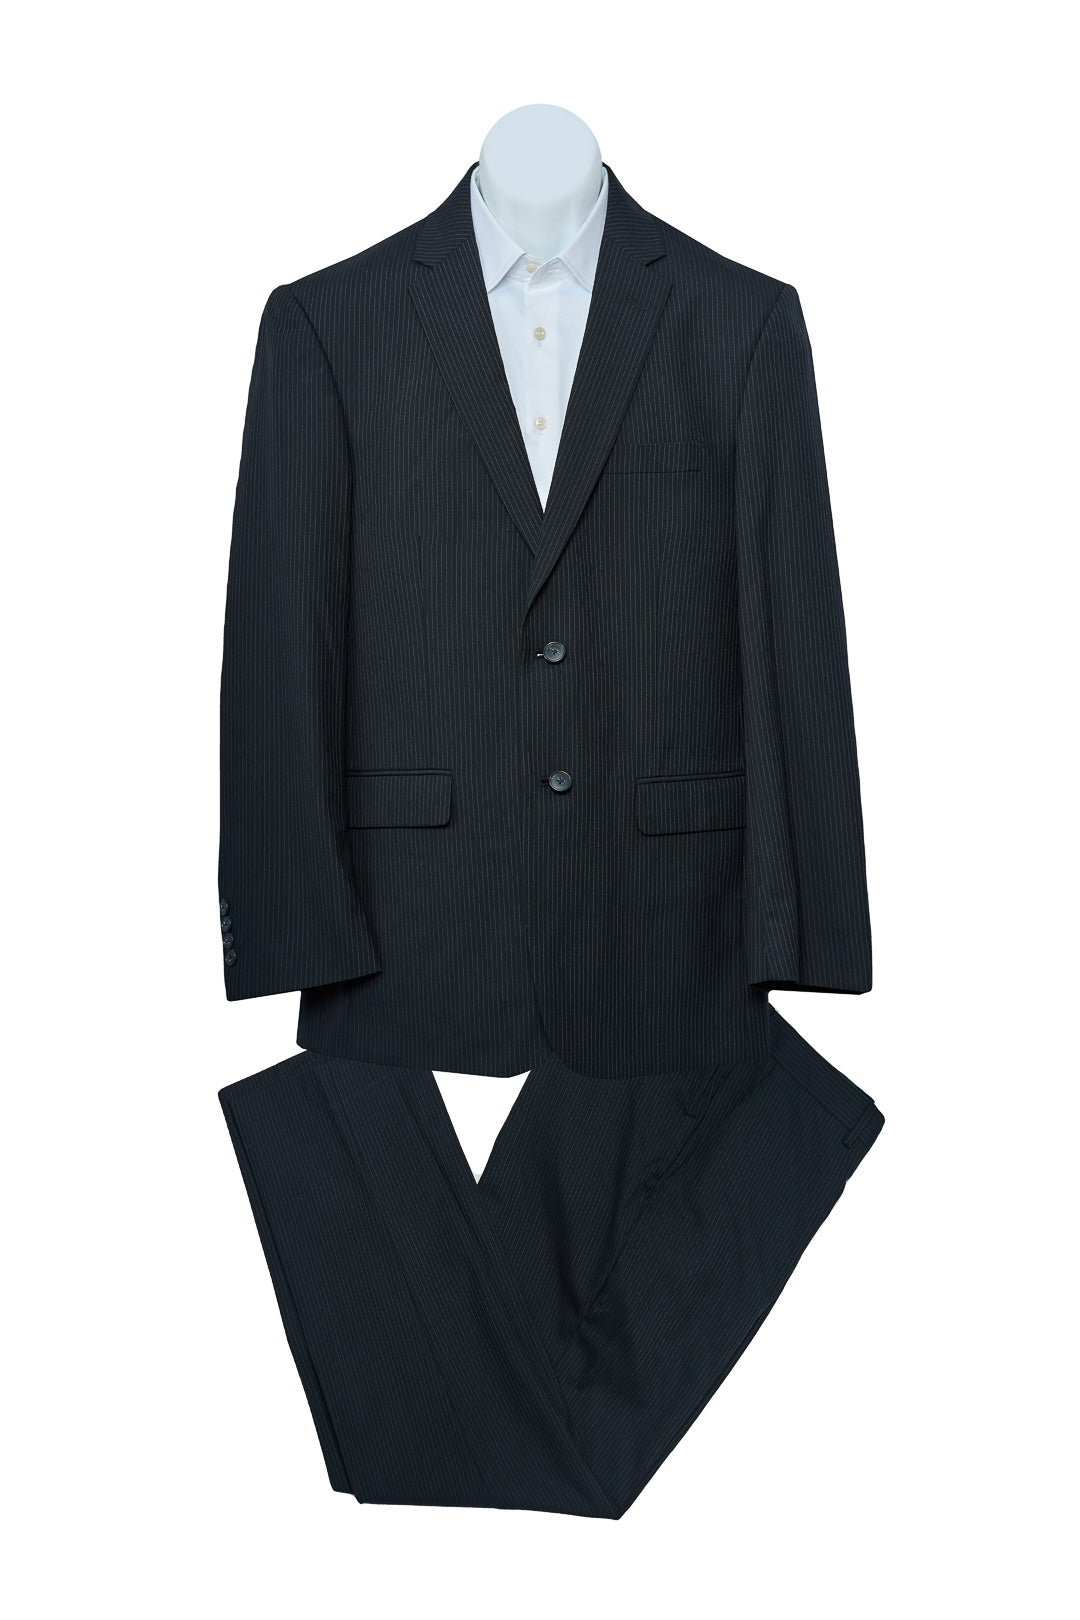 Pinstripe Black Classic Suit